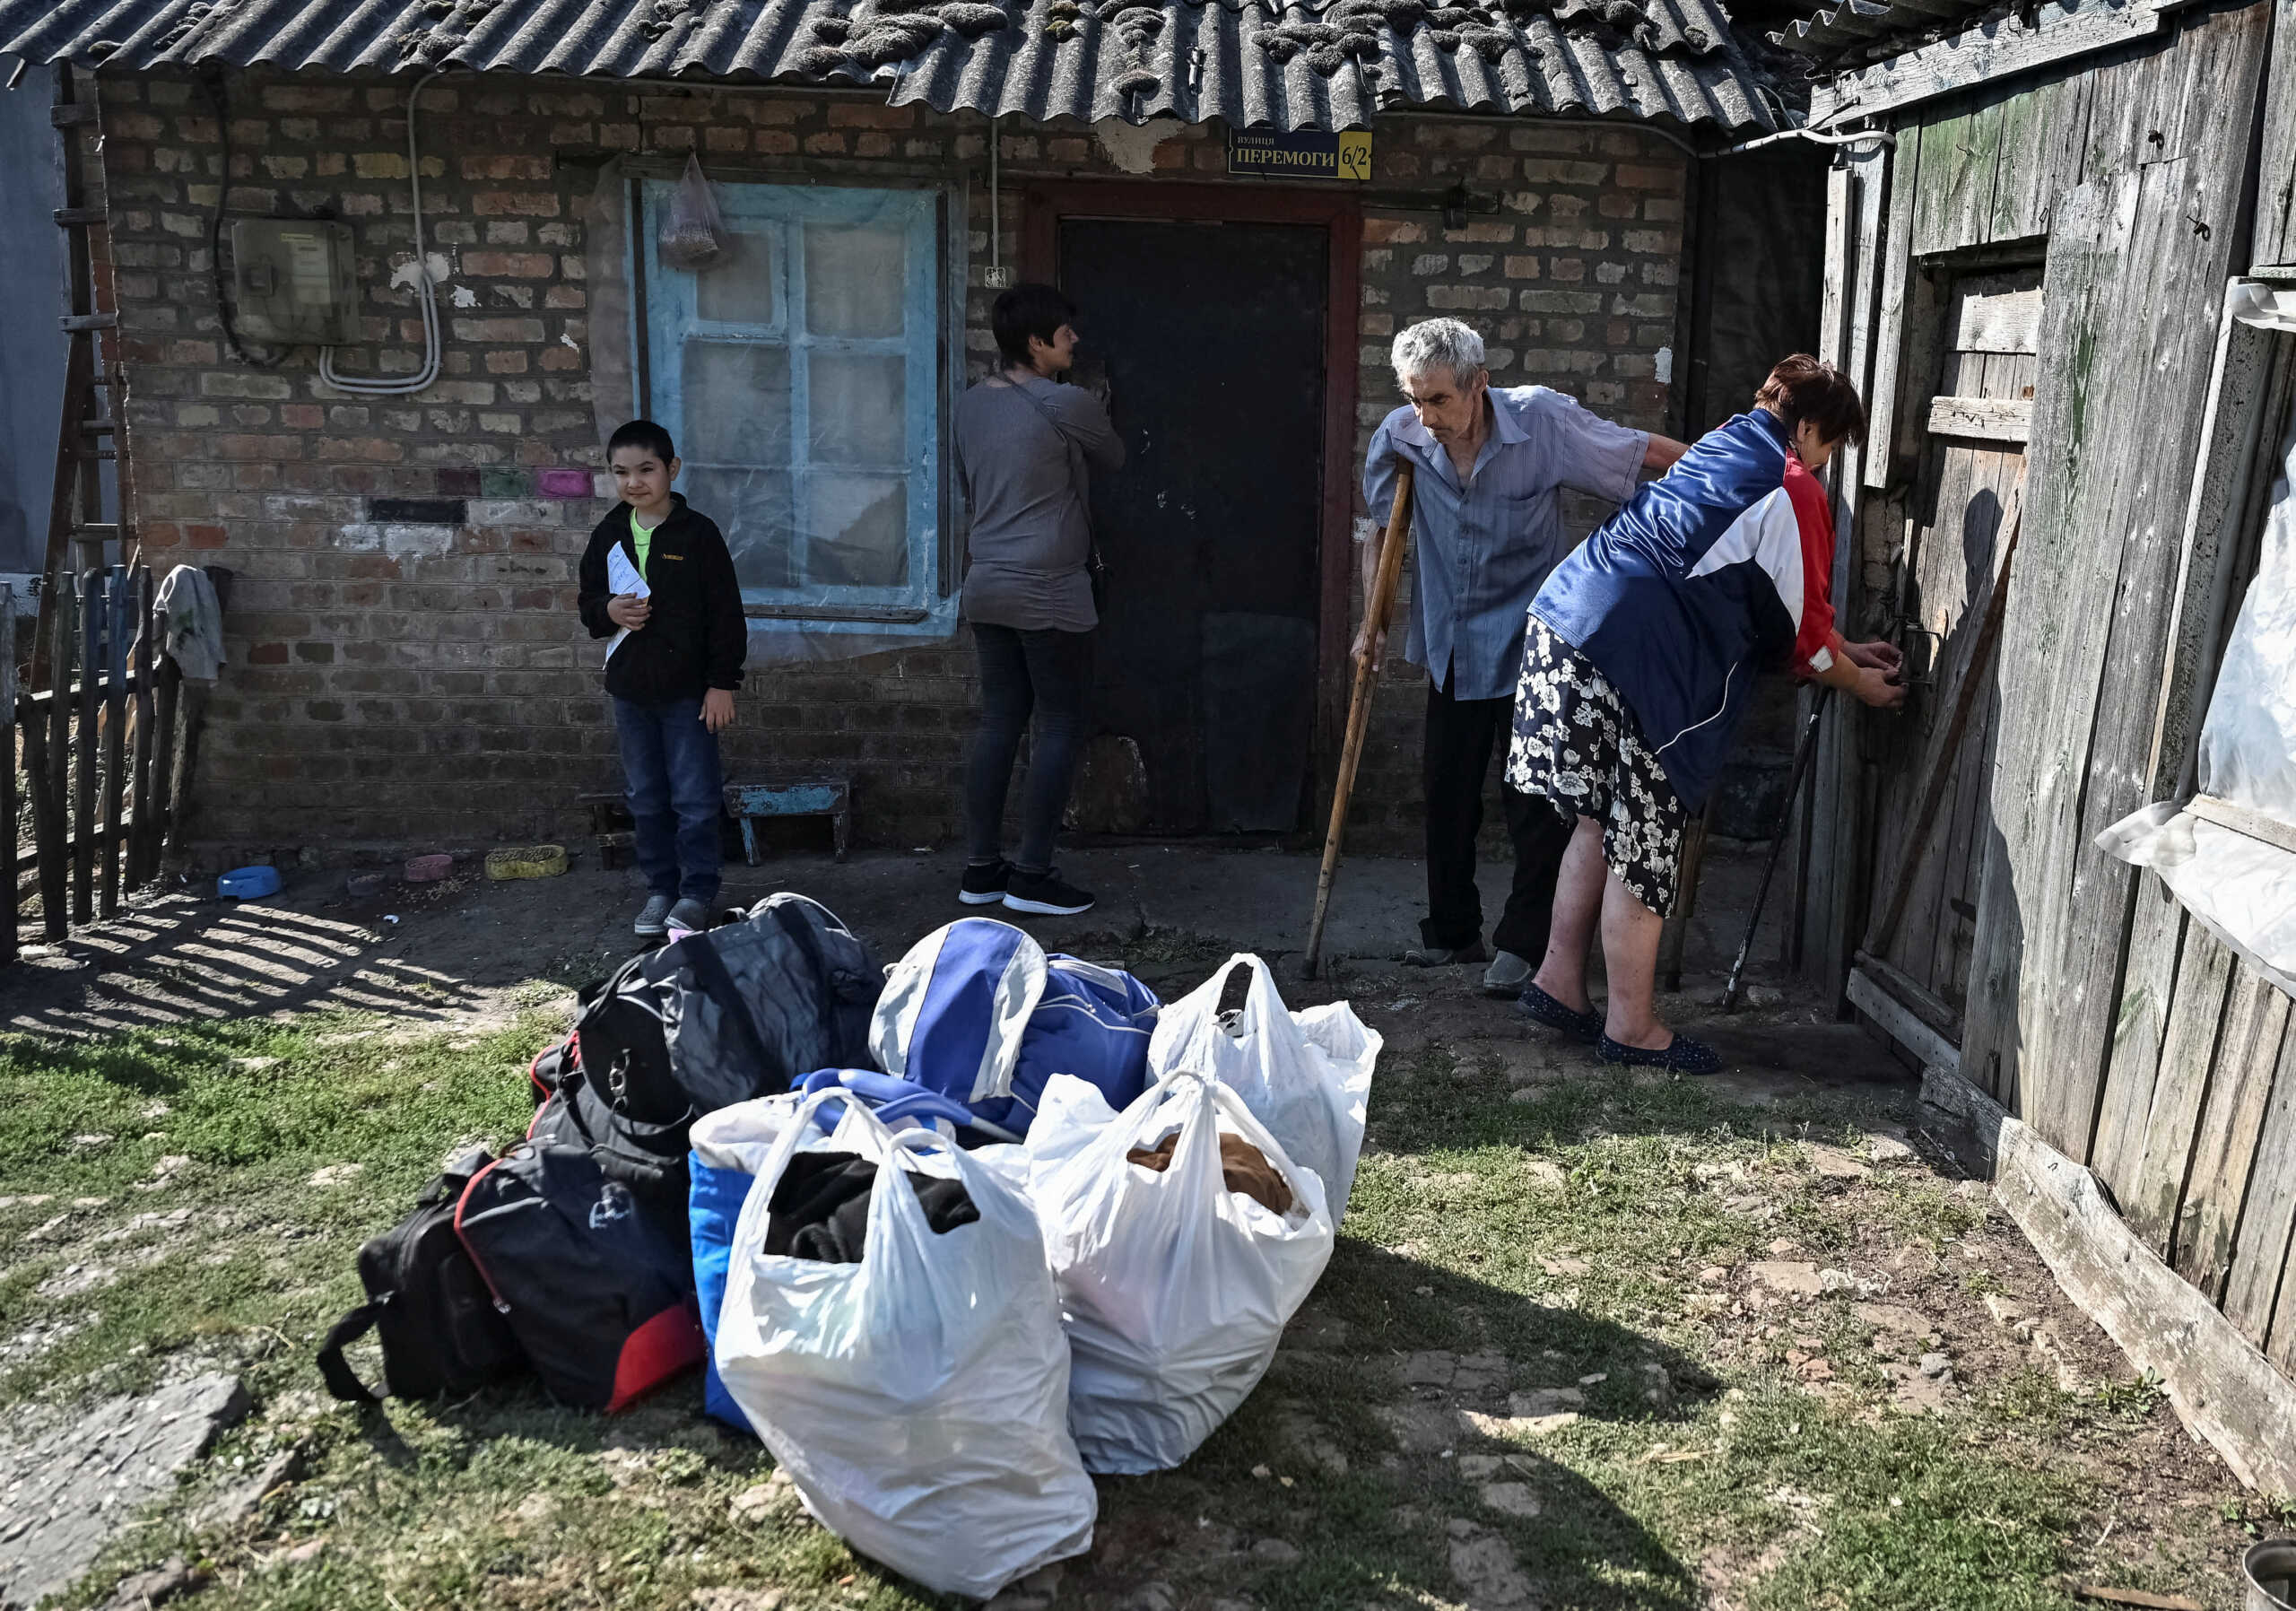 ΟΗΕ: 18 εκατομμύρια άνθρωποι στην Ουκρανία χρειάζονται ανθρωπιστική βοήθεια